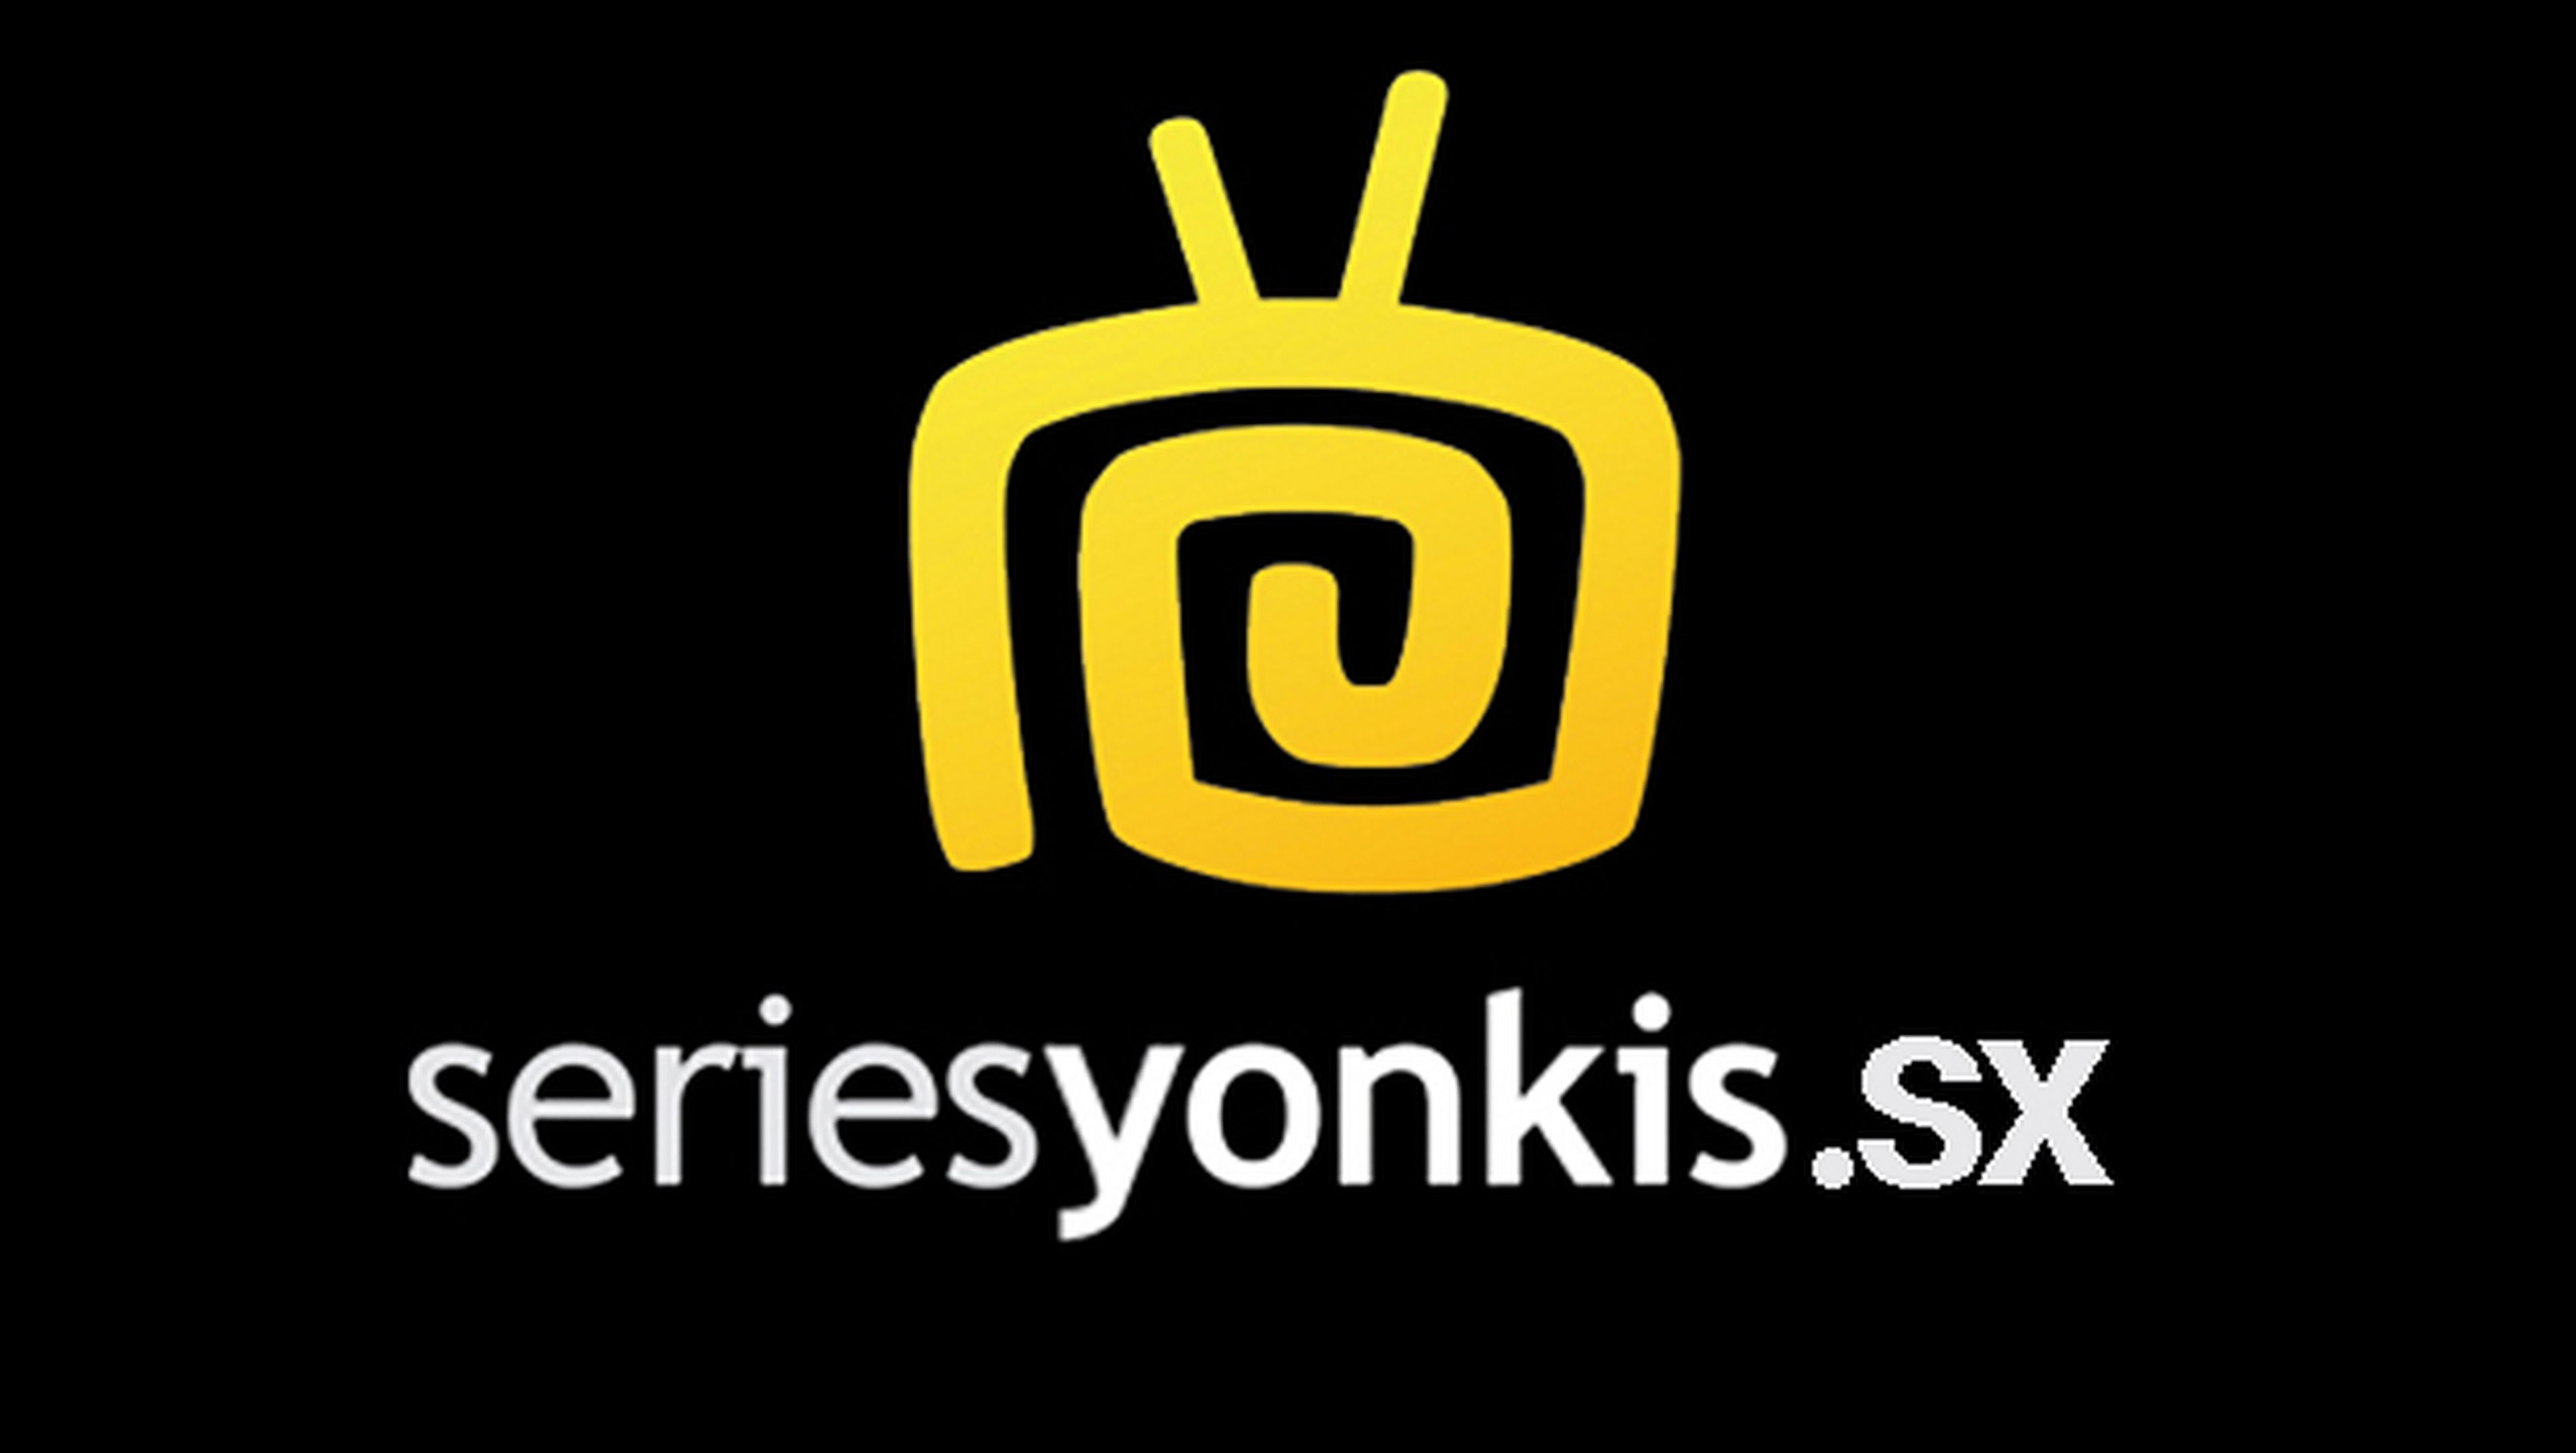 Series Yonkis vuelve a las andadas bajo un nuevo dominio